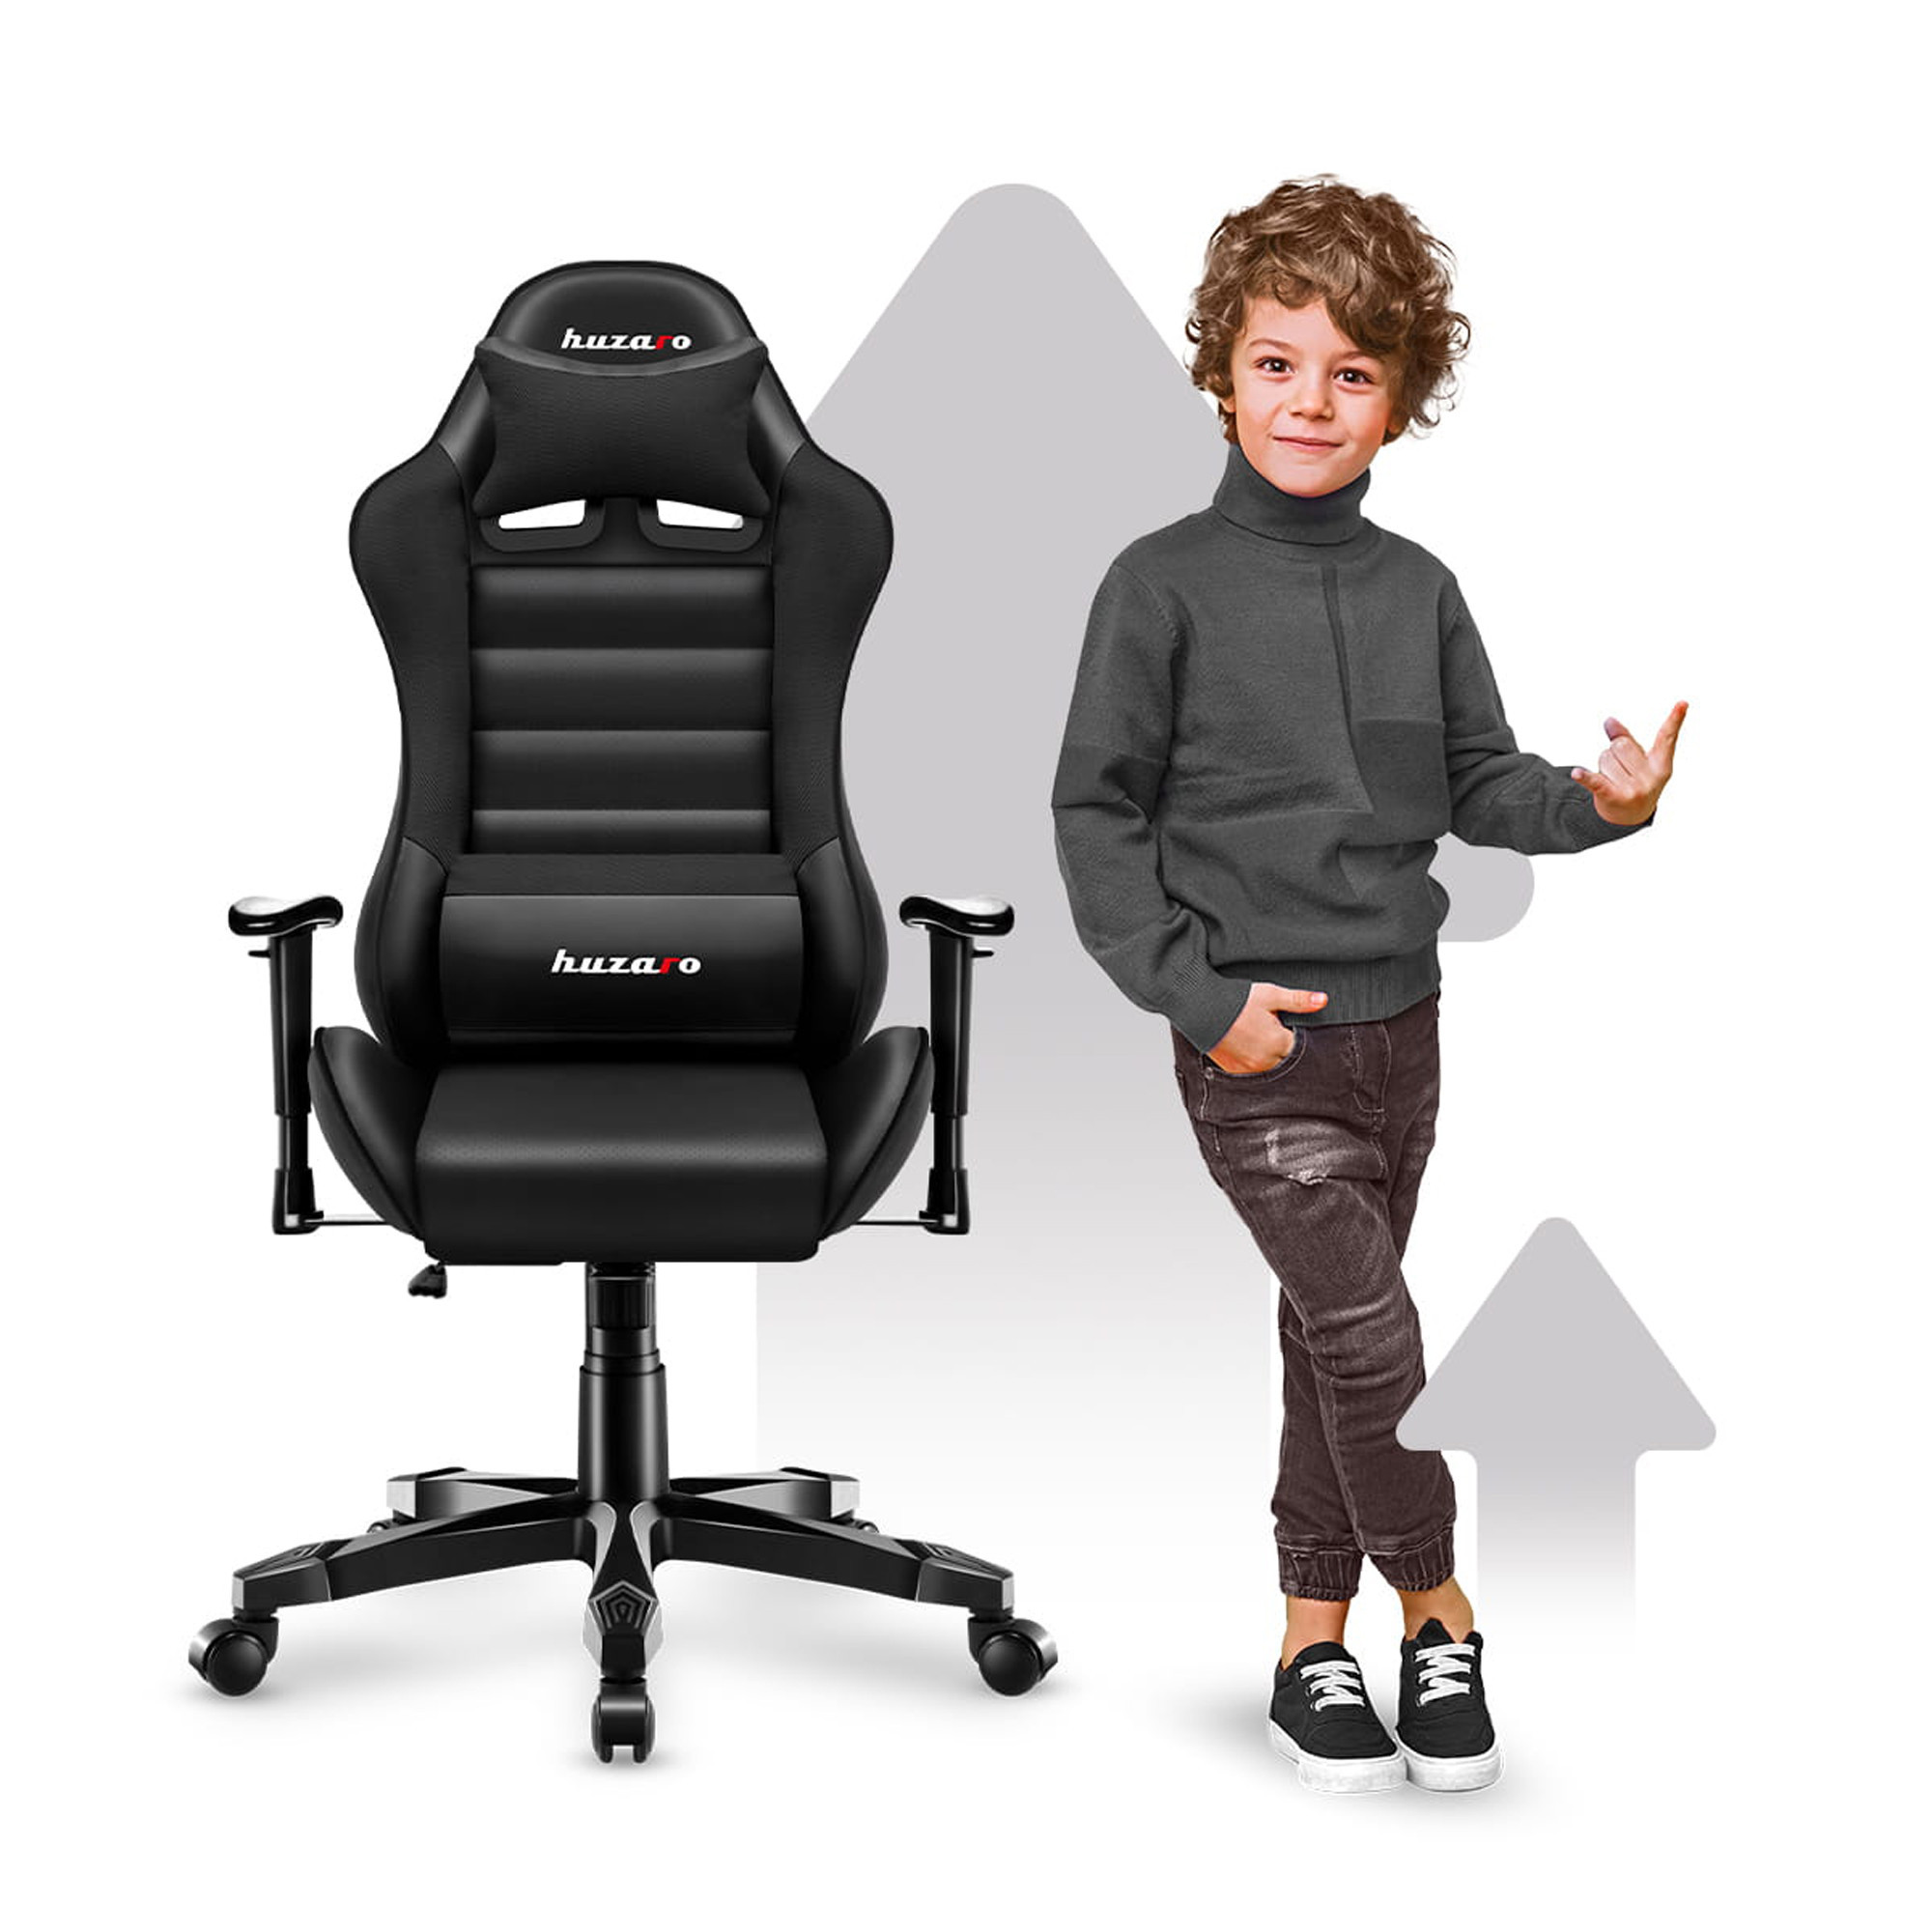 Dětská herní židle Ranger - 6.0 černá